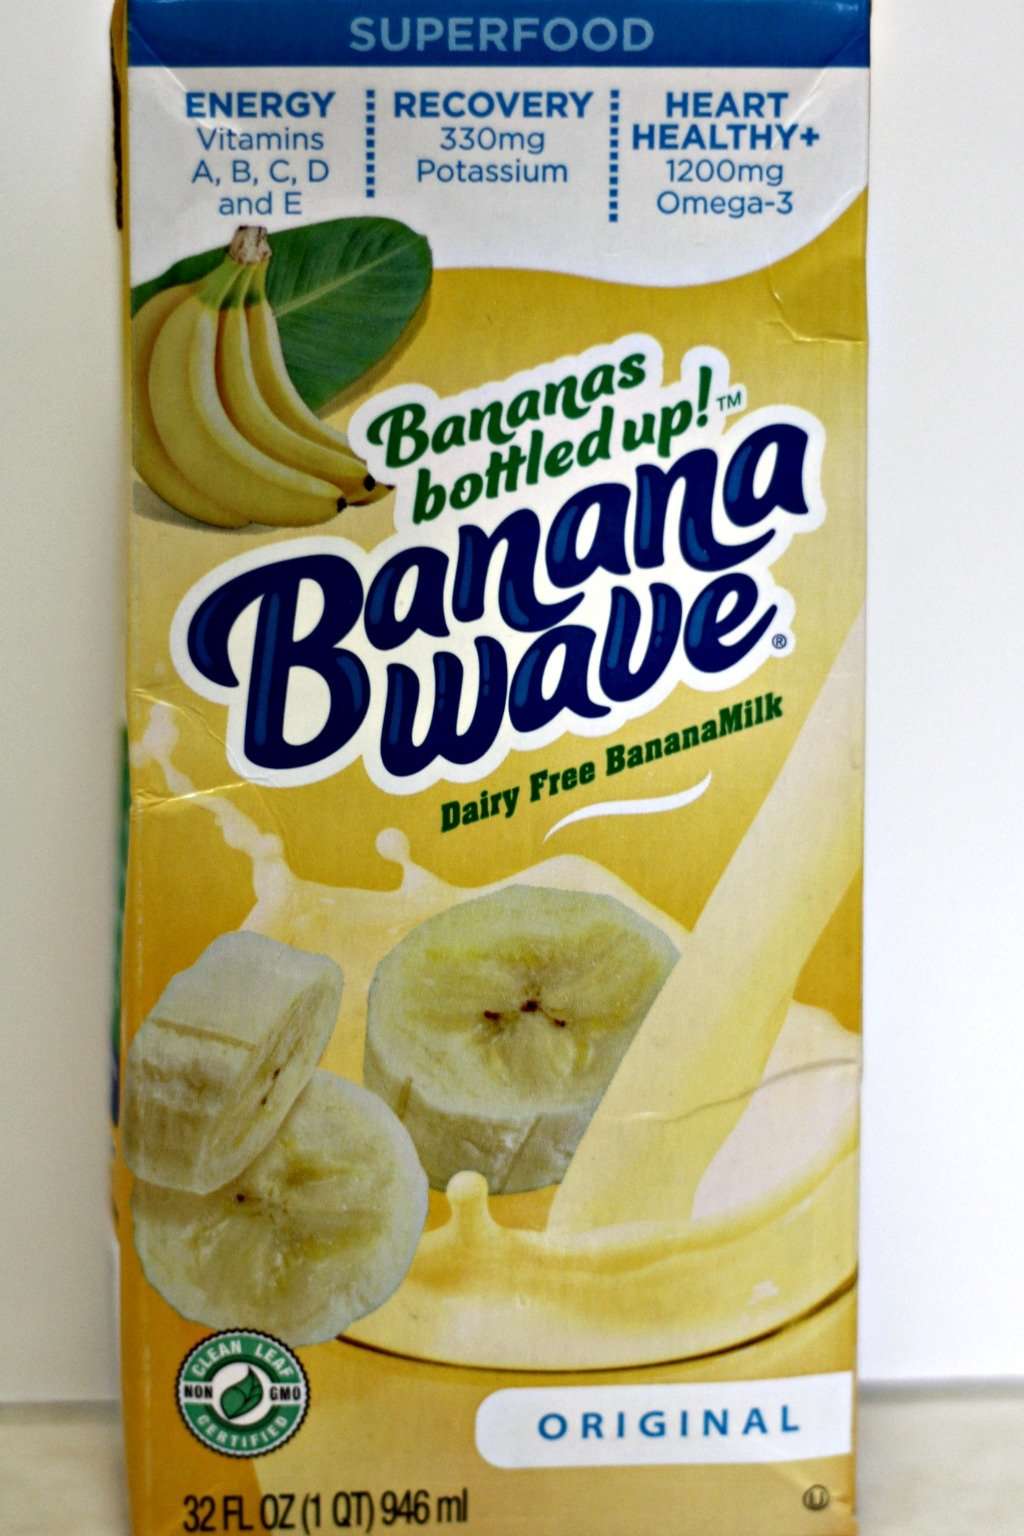 Banana Pancakes with Banana Wave Bananamilk